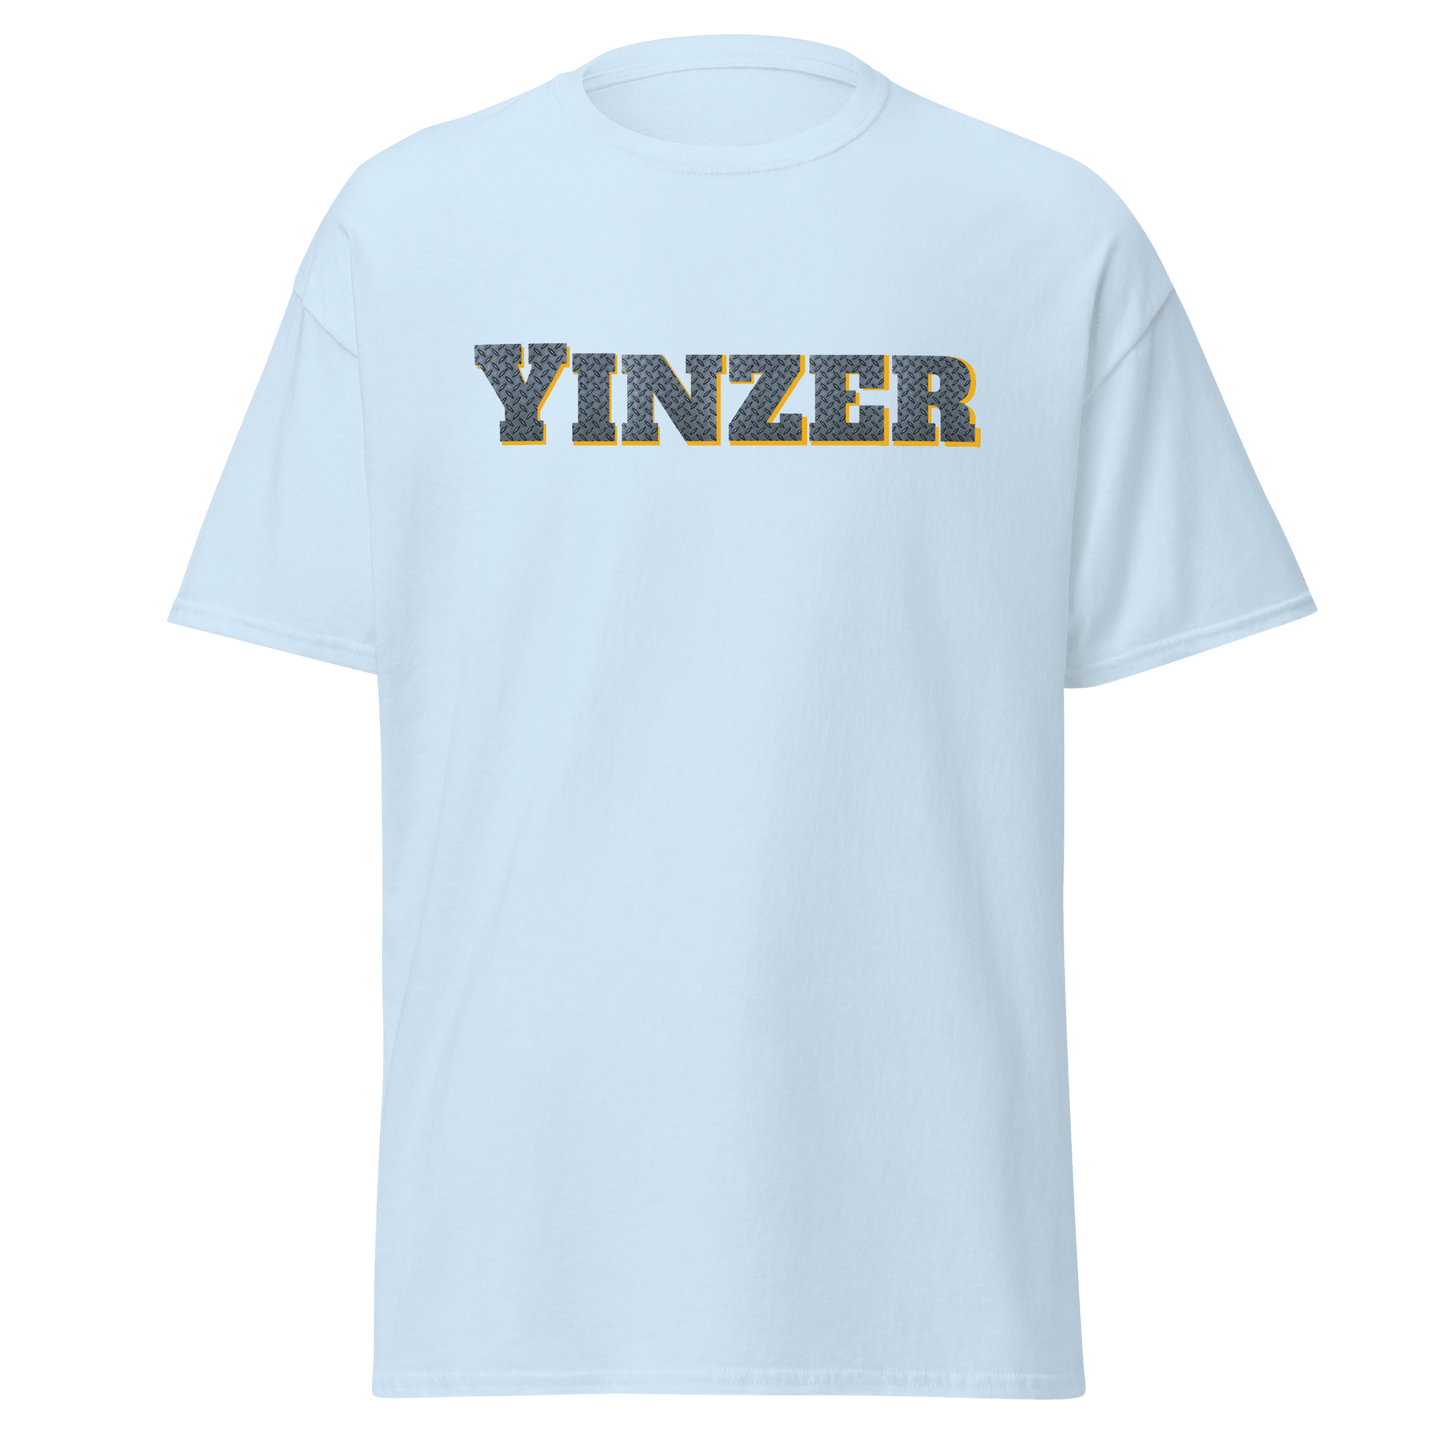 Steel Yinzer T-Shirt - Burgh Proud Yinzergear Light Blue S 